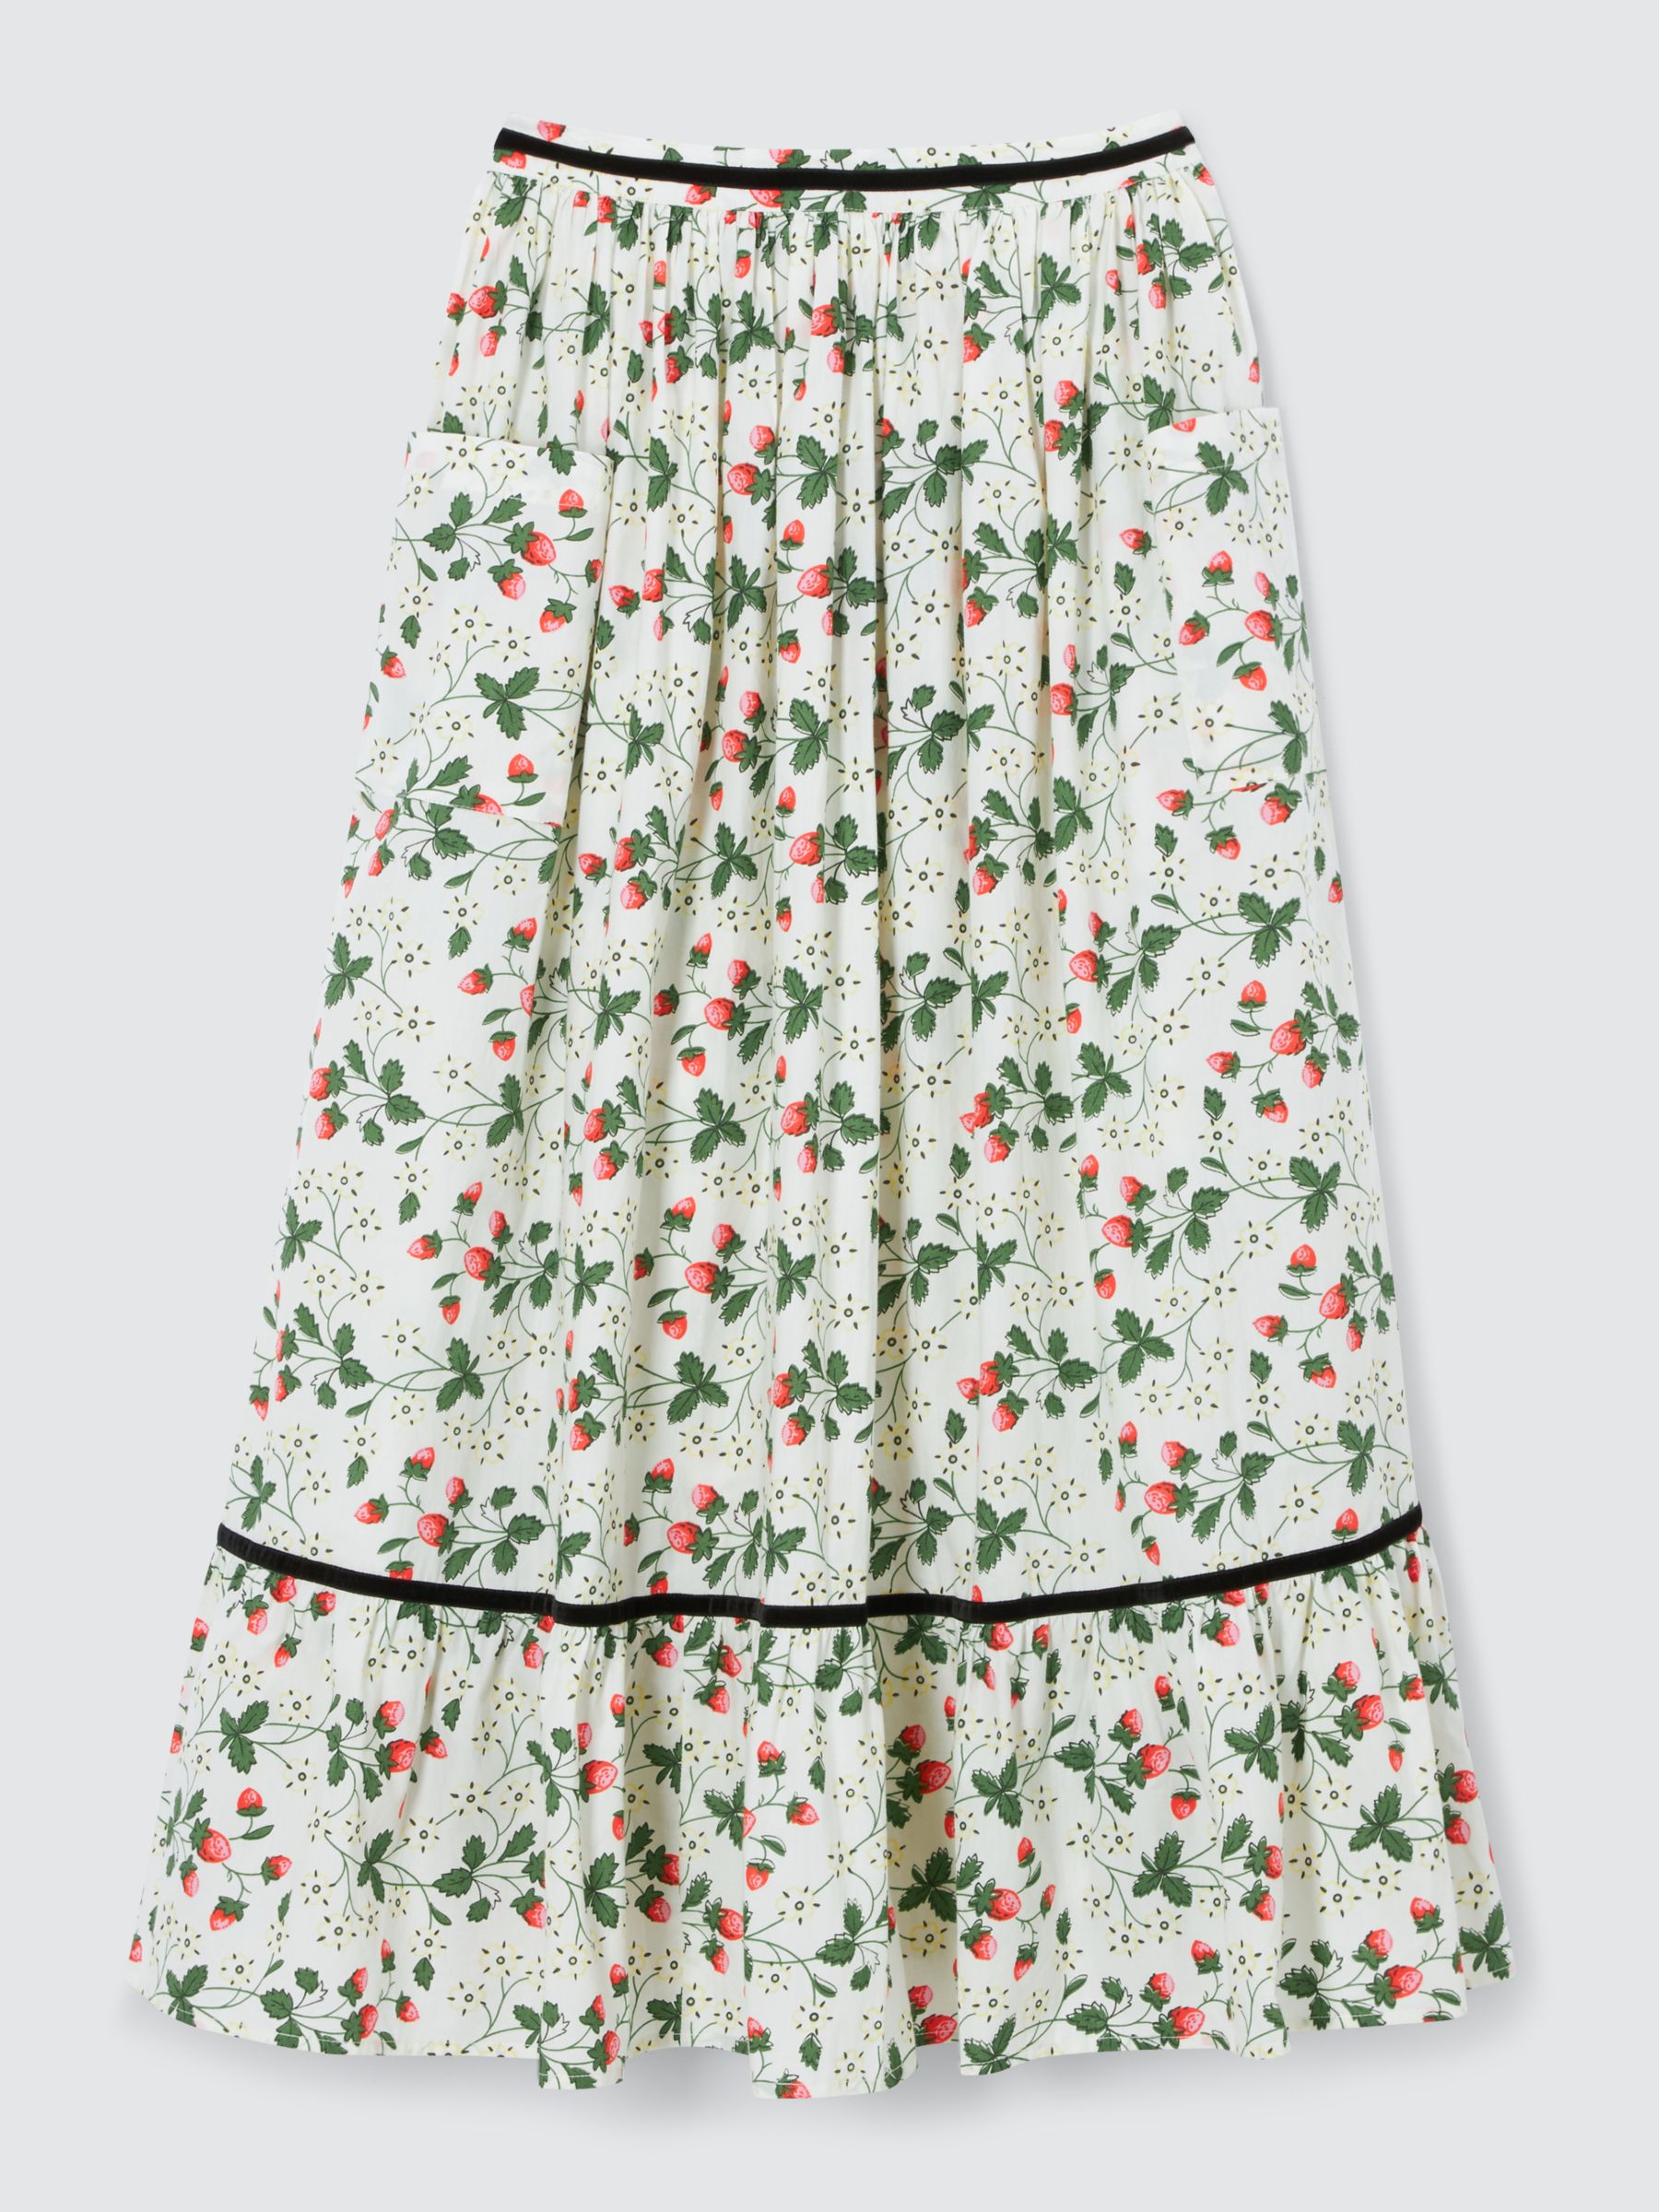 Batsheva x Laura Ashley Kipp Strawberry Field Skirt, White/Multi, 16